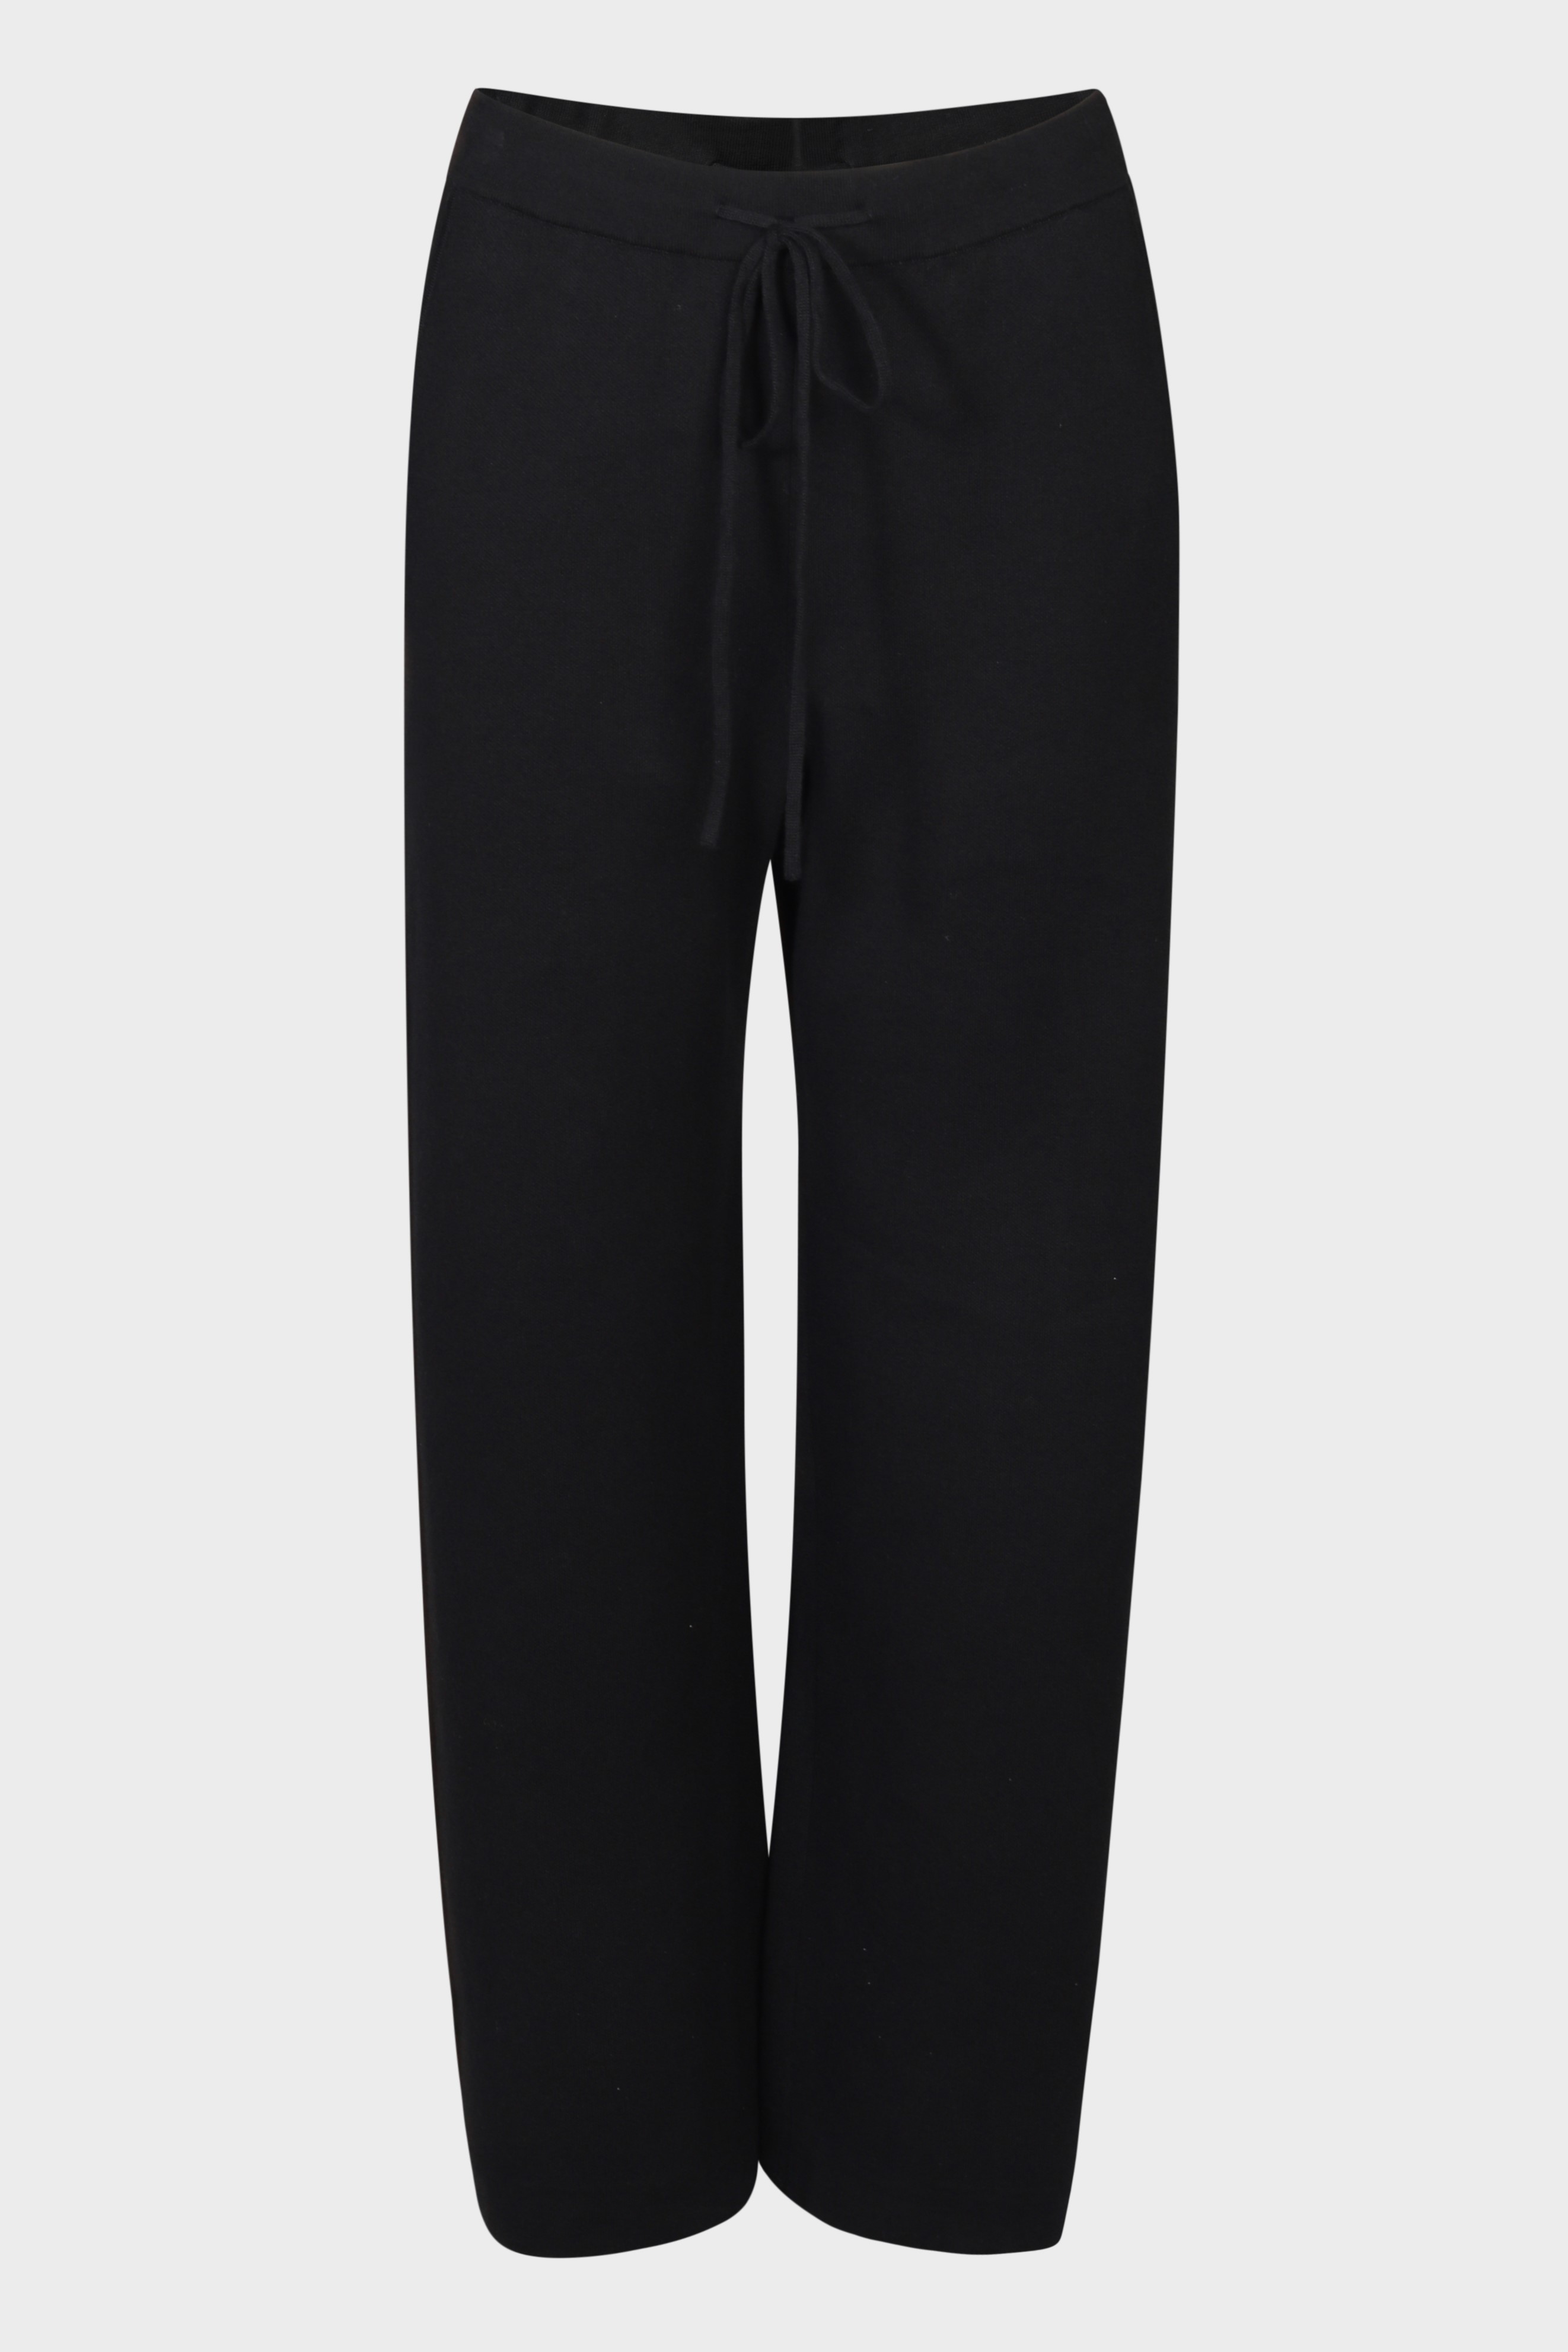 FLONA Cotton/ Cashmere Knit Pant in Black XS